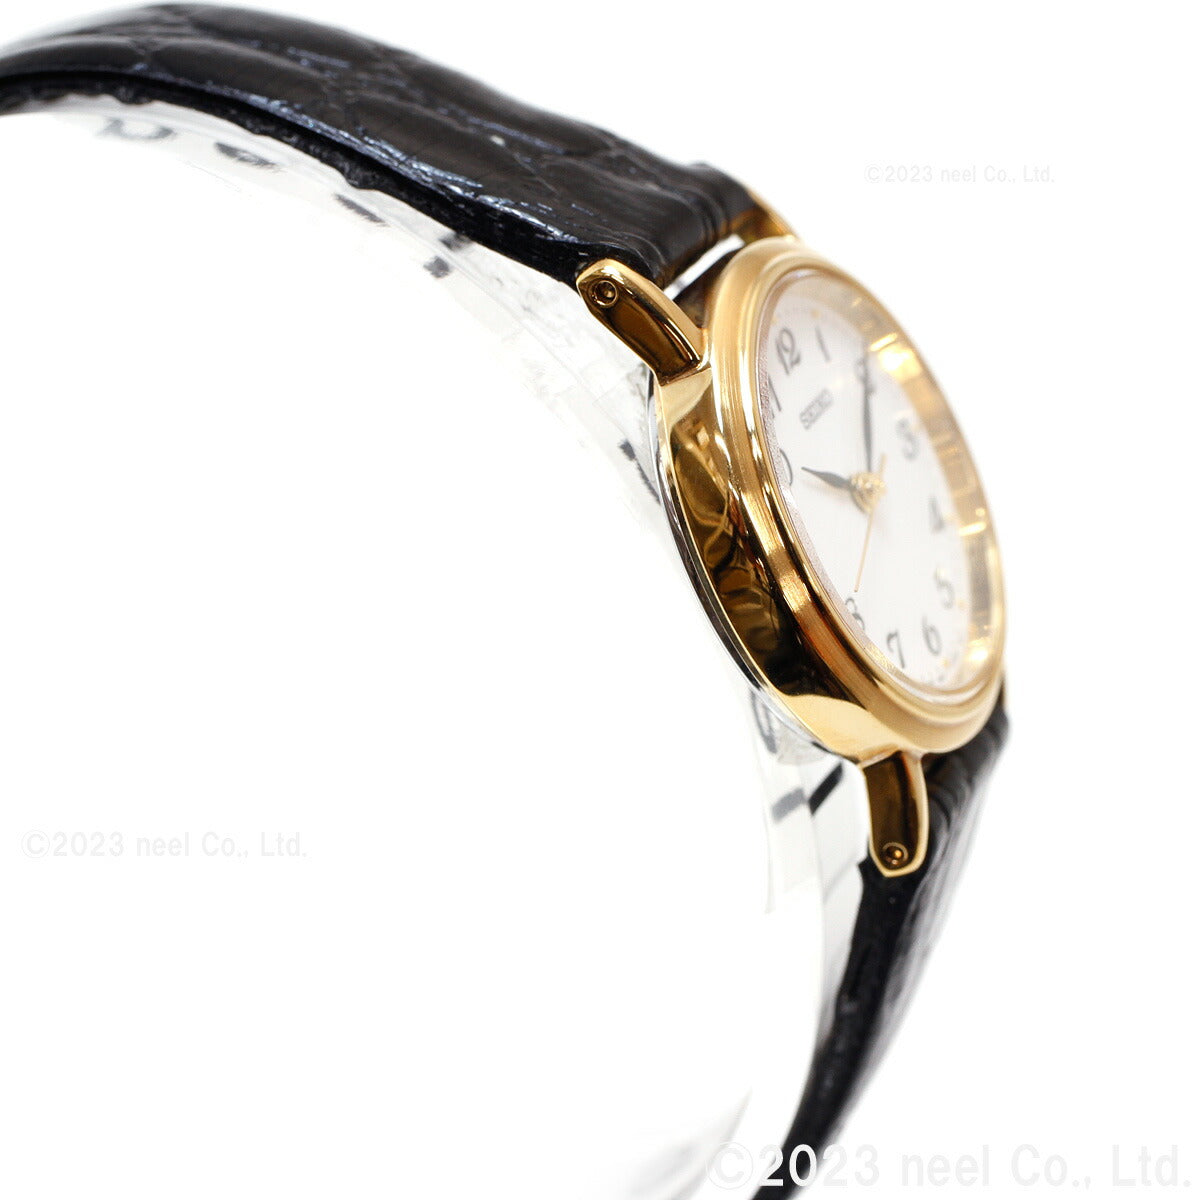 セイコー セレクション 腕時計 ペアモデル SEIKO SELECTION ホワイト SSDA030